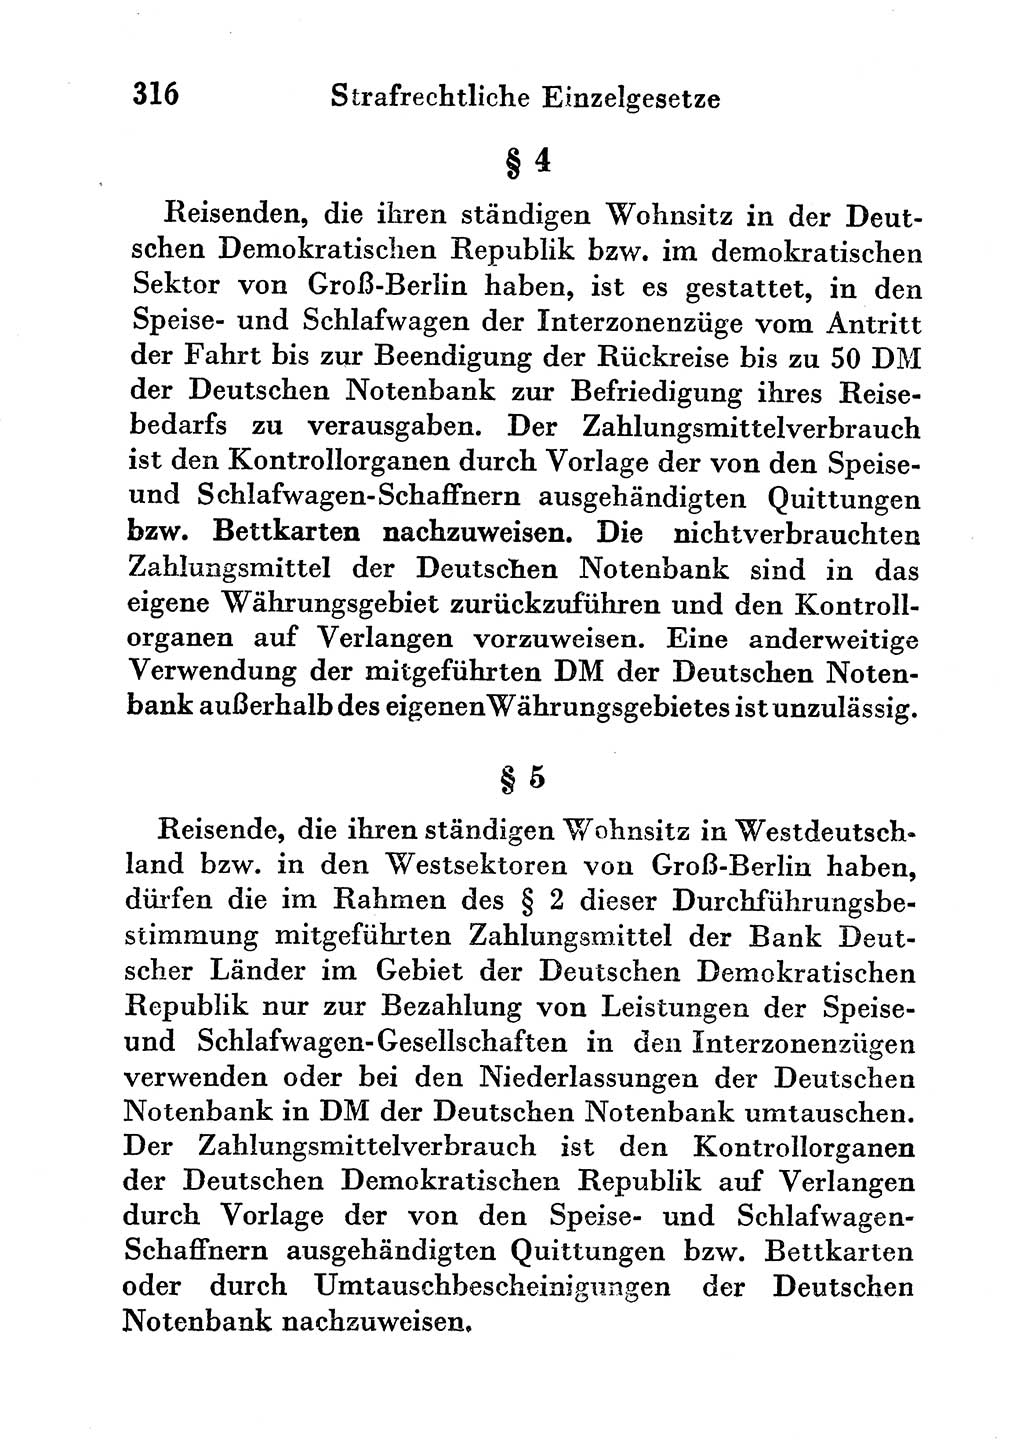 Strafgesetzbuch (StGB) und andere Strafgesetze [Deutsche Demokratische Republik (DDR)] 1956, Seite 316 (StGB Strafges. DDR 1956, S. 316)